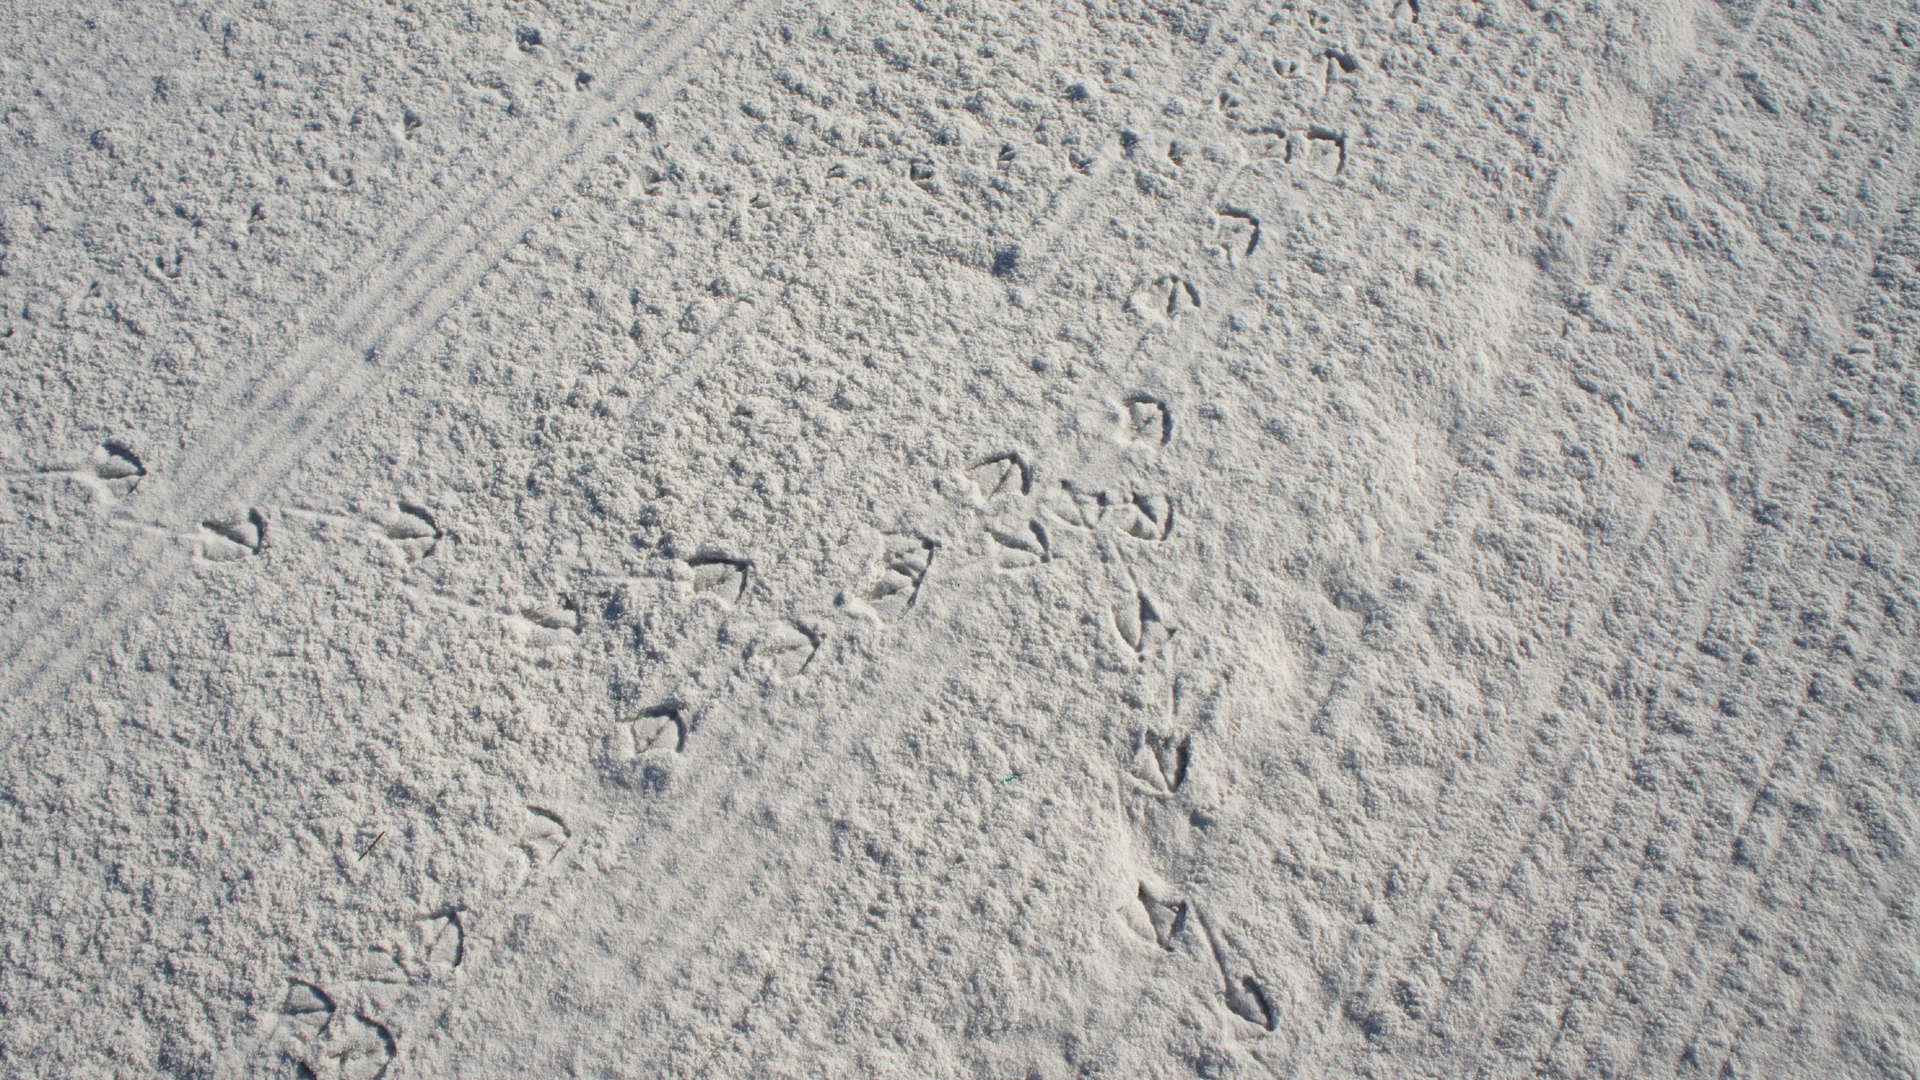 Shades of White 08: Spuren im Sand